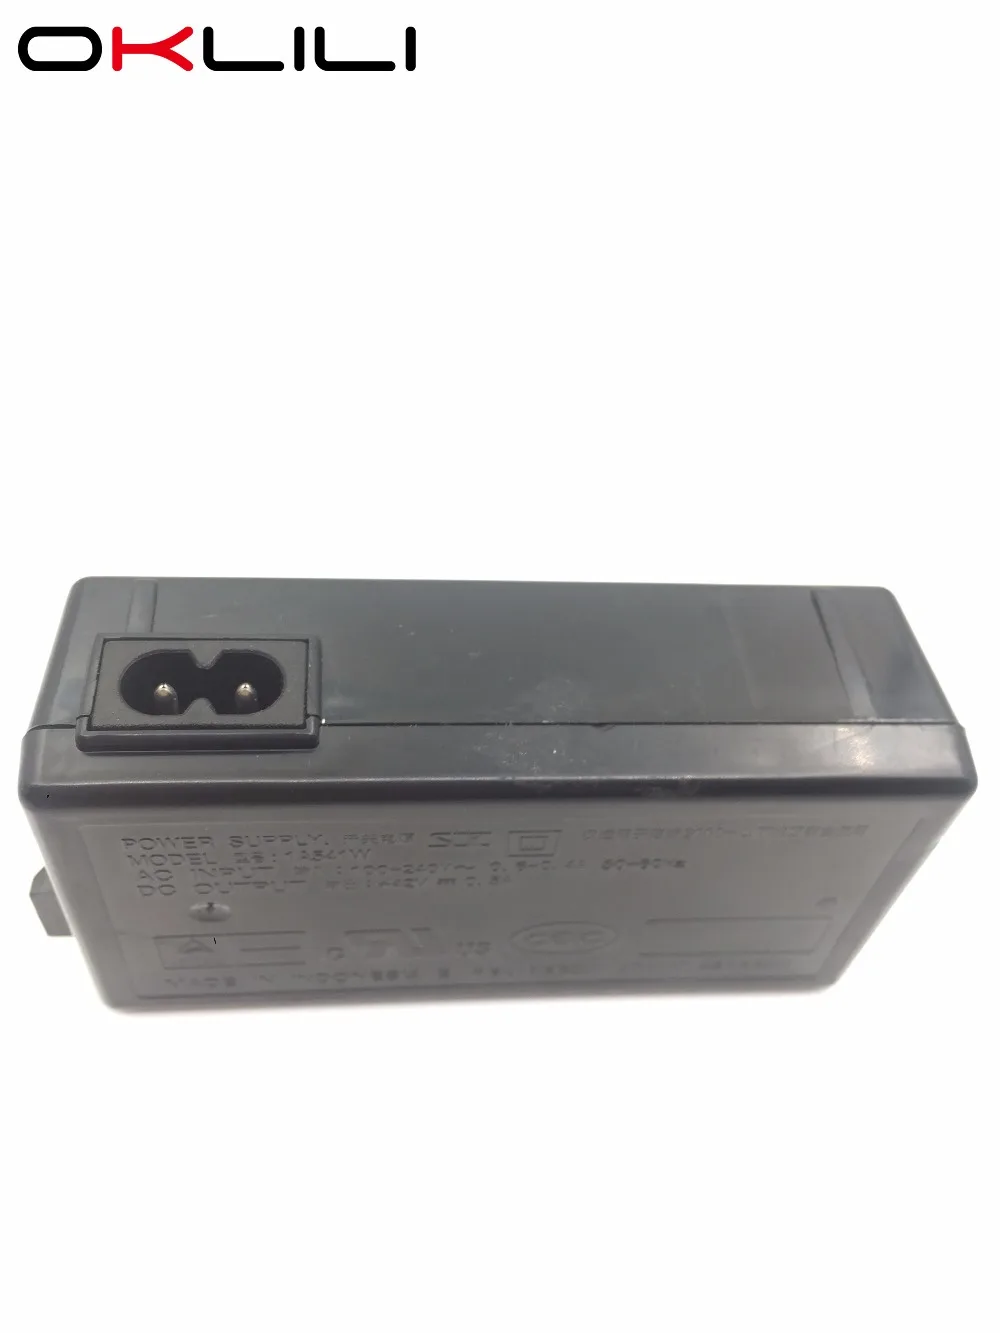 5 AC Питание адаптер Зарядное устройство для Epson L110 L120 L210 L220 L300 L310 L350 L355 L360 L365 L455 L555 L565 l100 L132 L130 L222